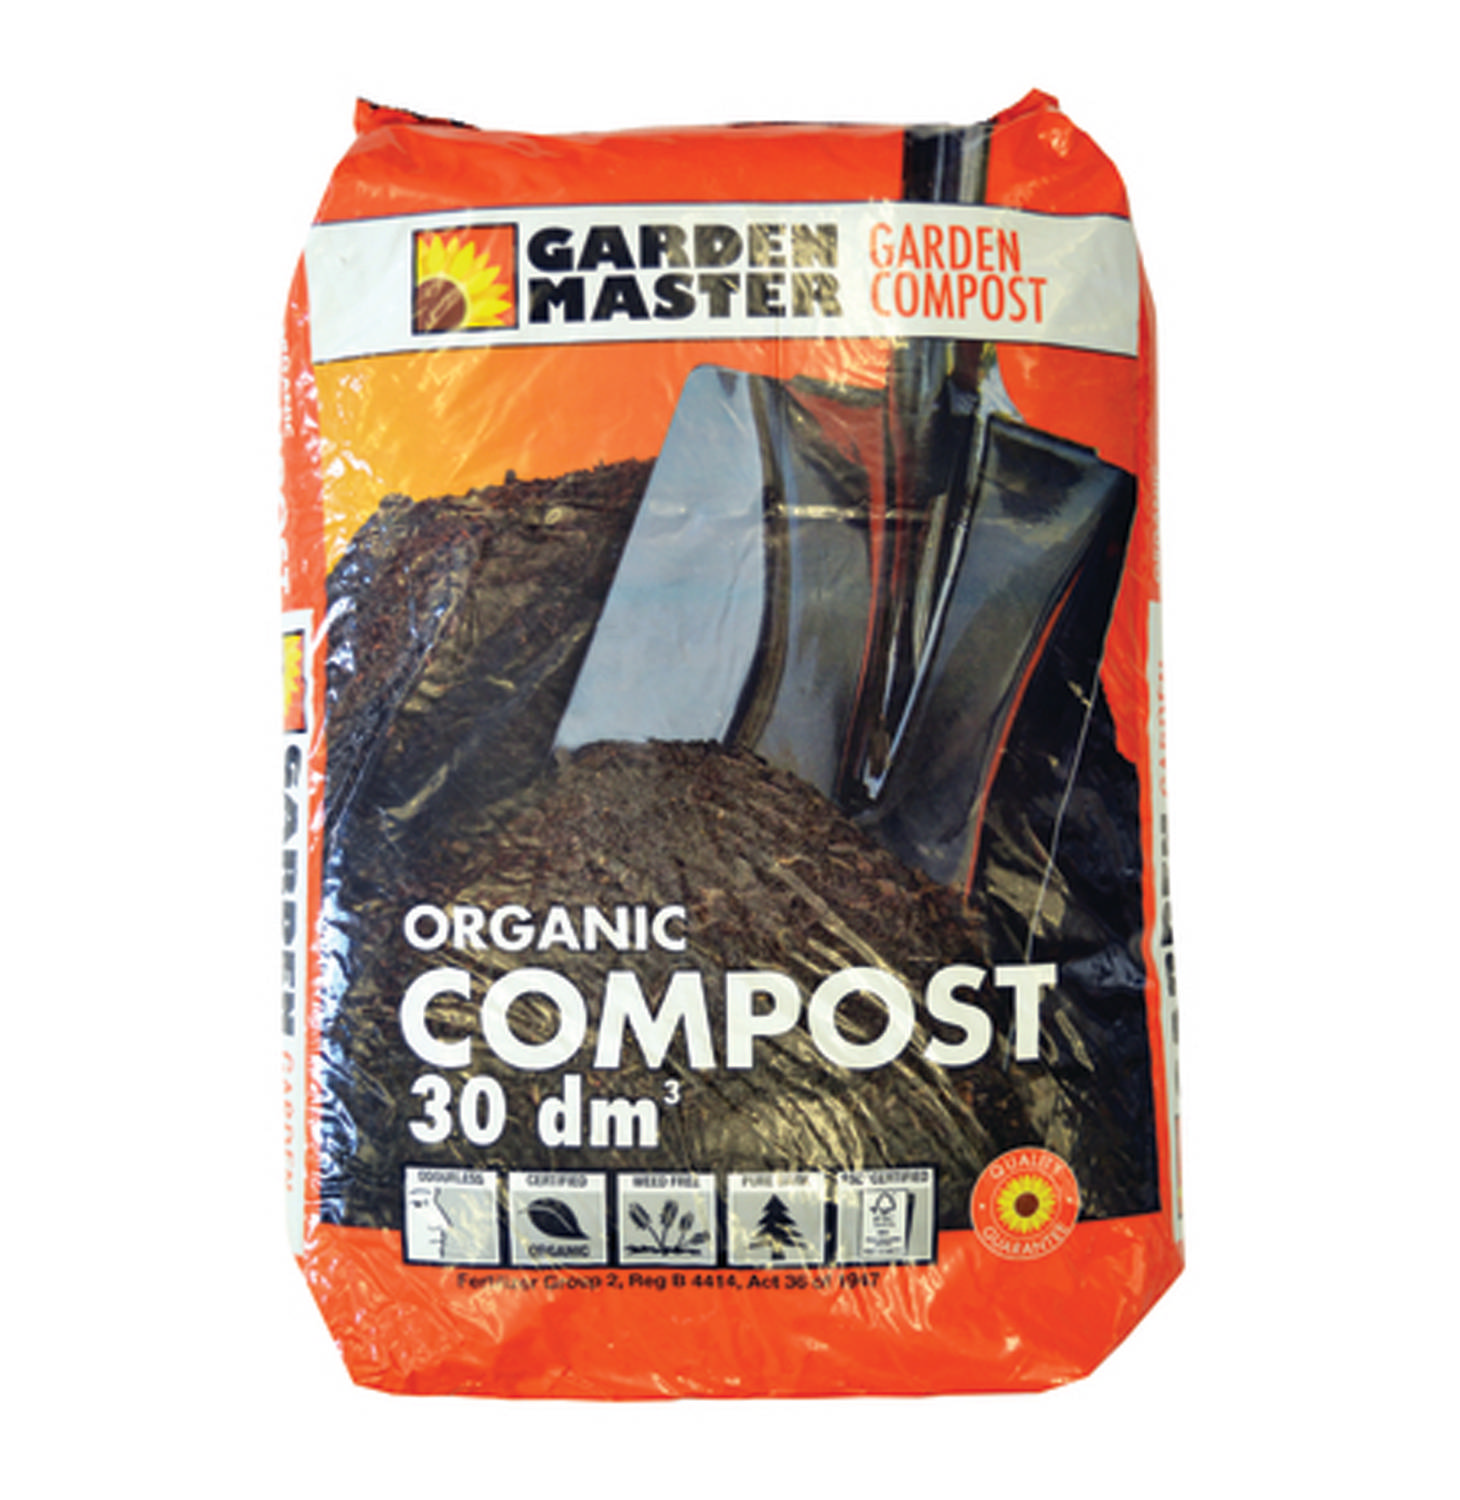 Garden Master Compost 30dm